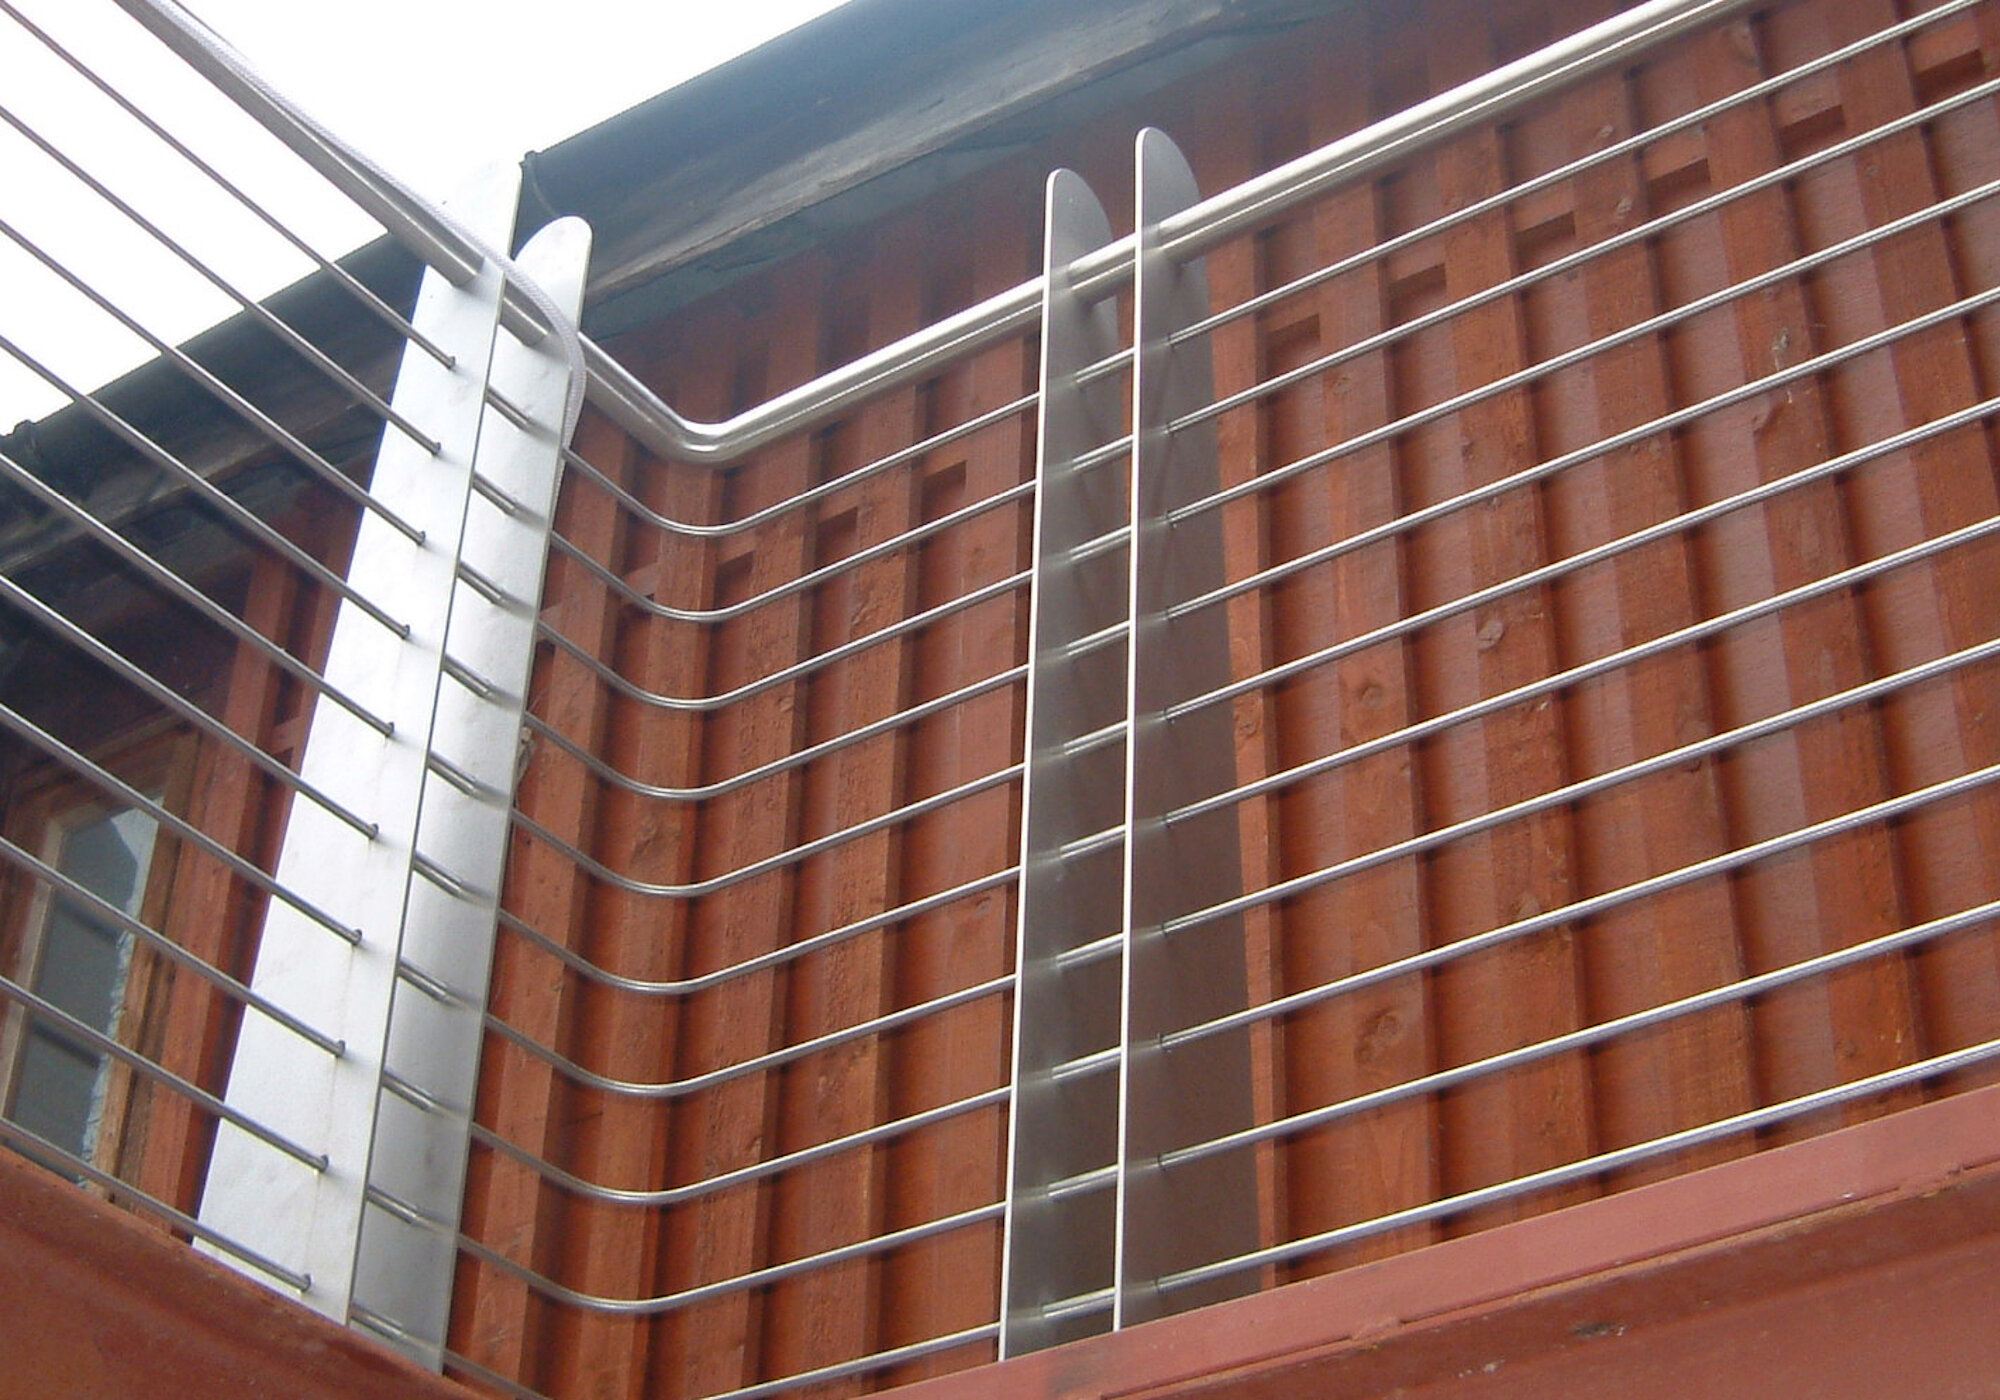 Stainless steel balcony railings 2 crop.JPG